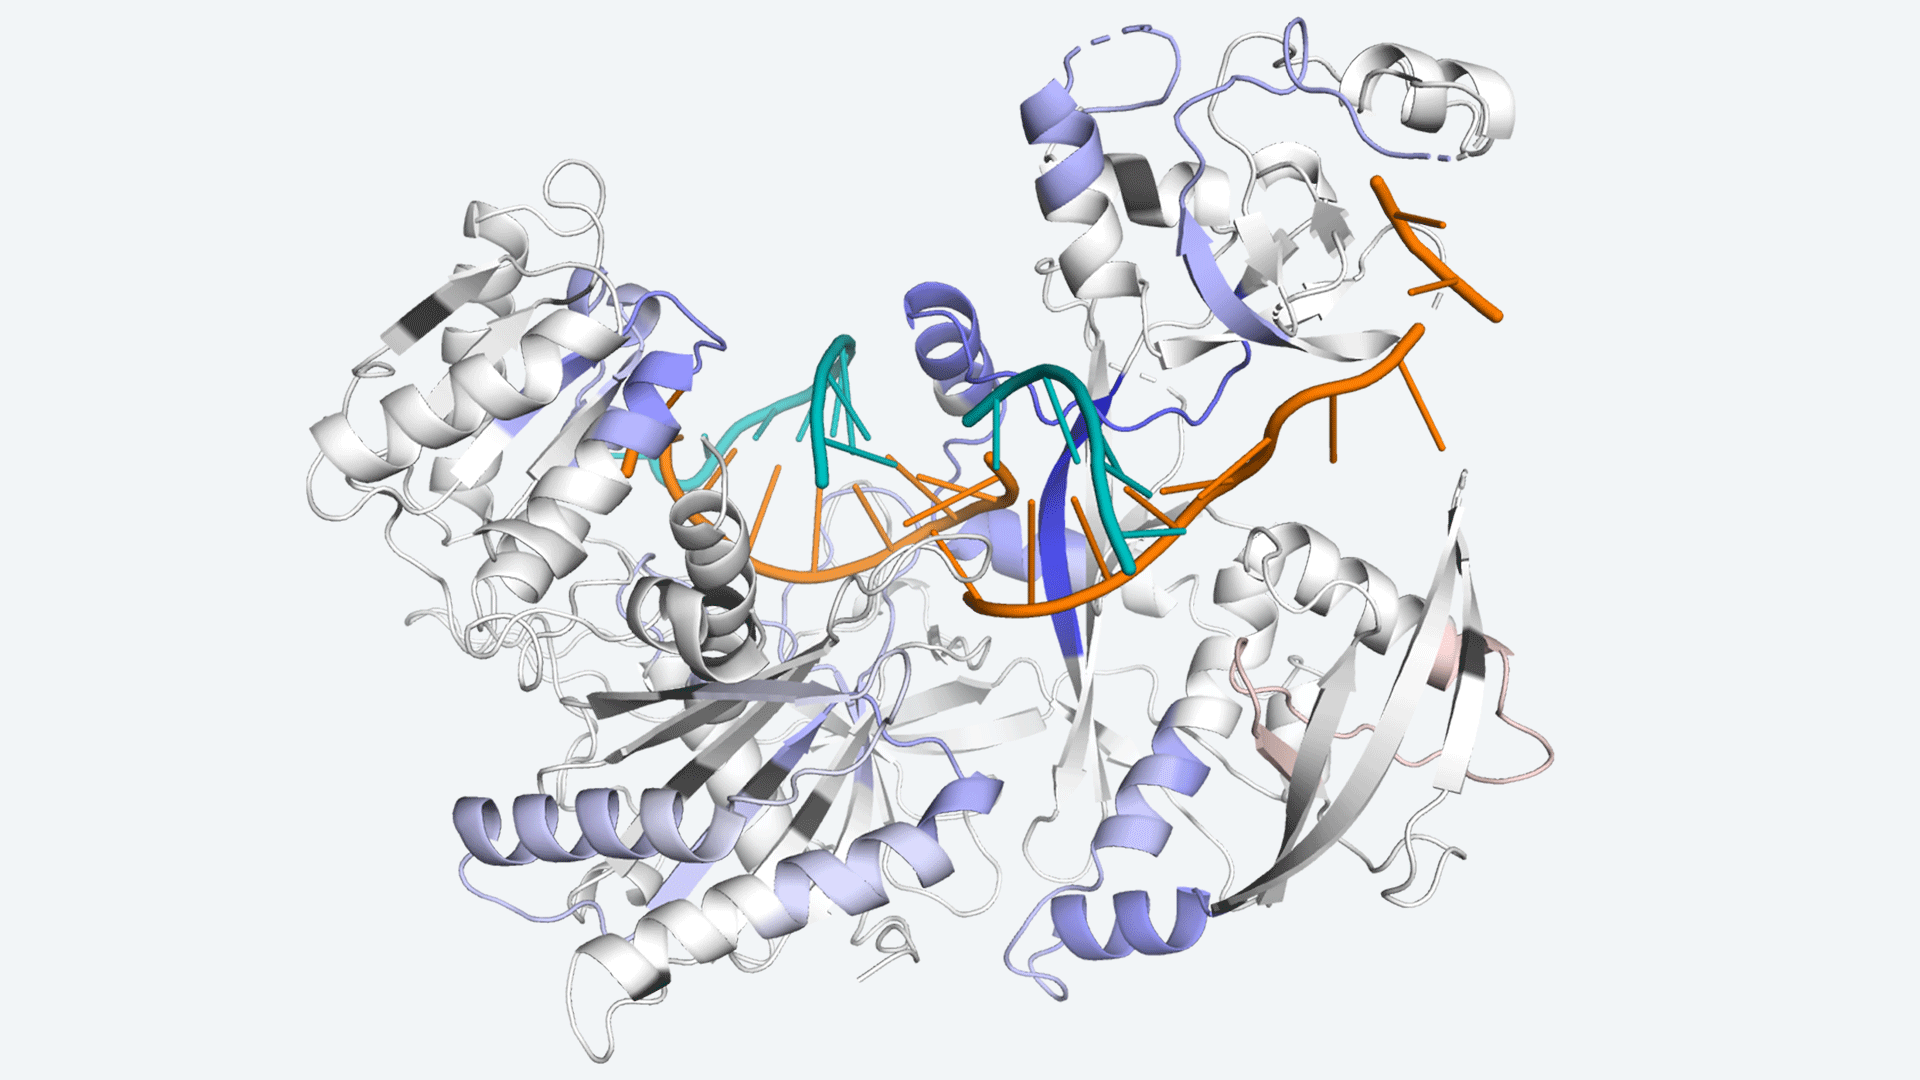 illustration of an argonaute protein